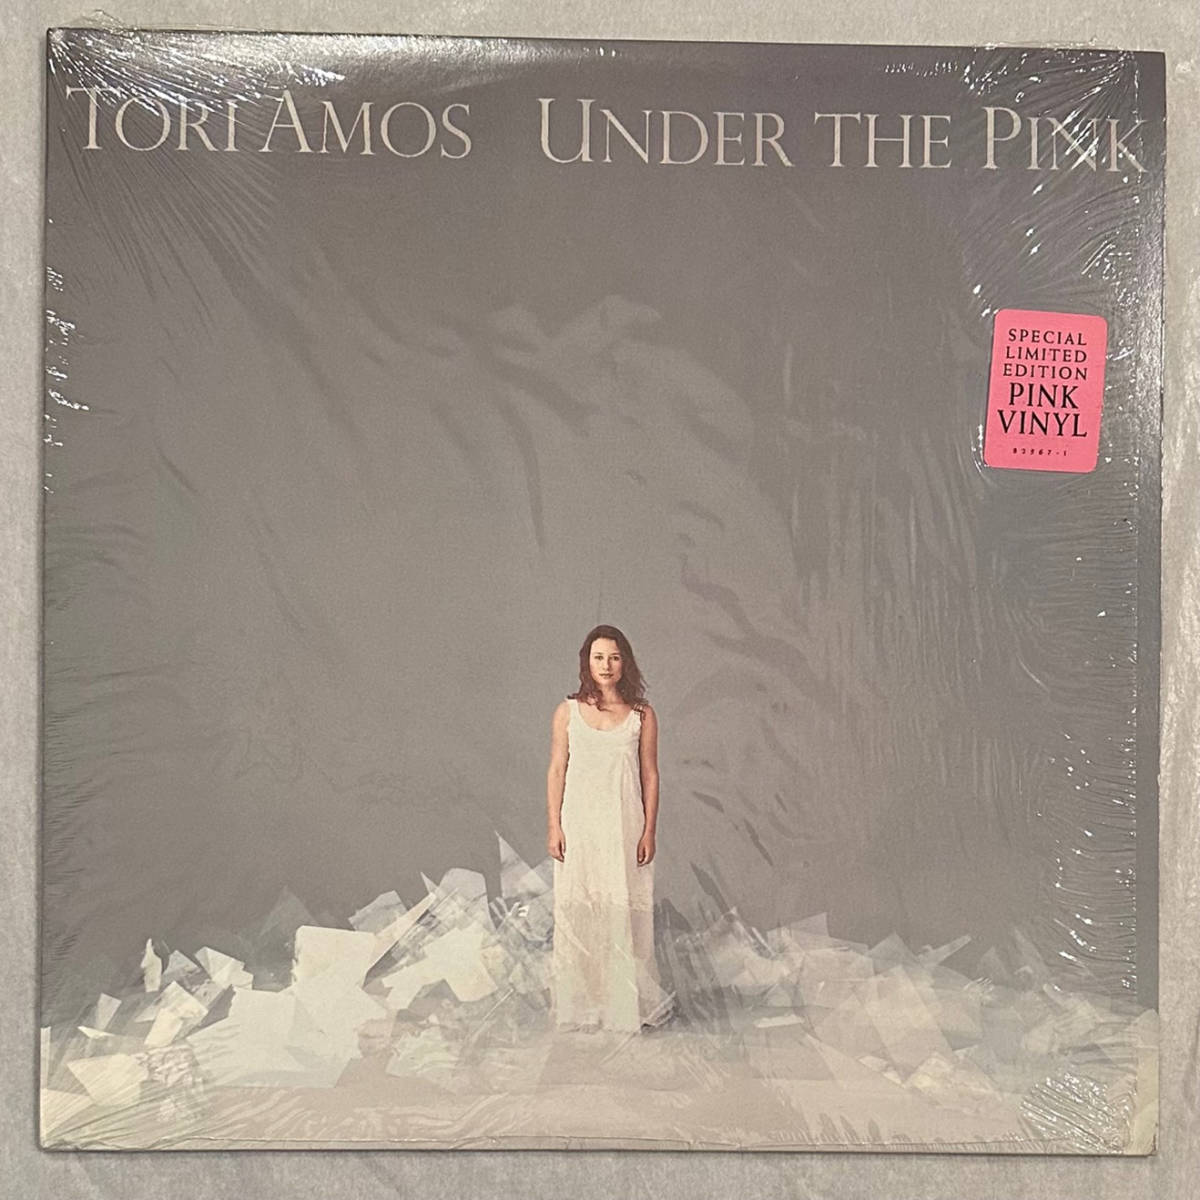 ■1994年 オリジナル US盤 TORI AMOS - Under The Pink 12”LP Limited Edition Pink Vinyl 82567-1 Atlantic_画像1